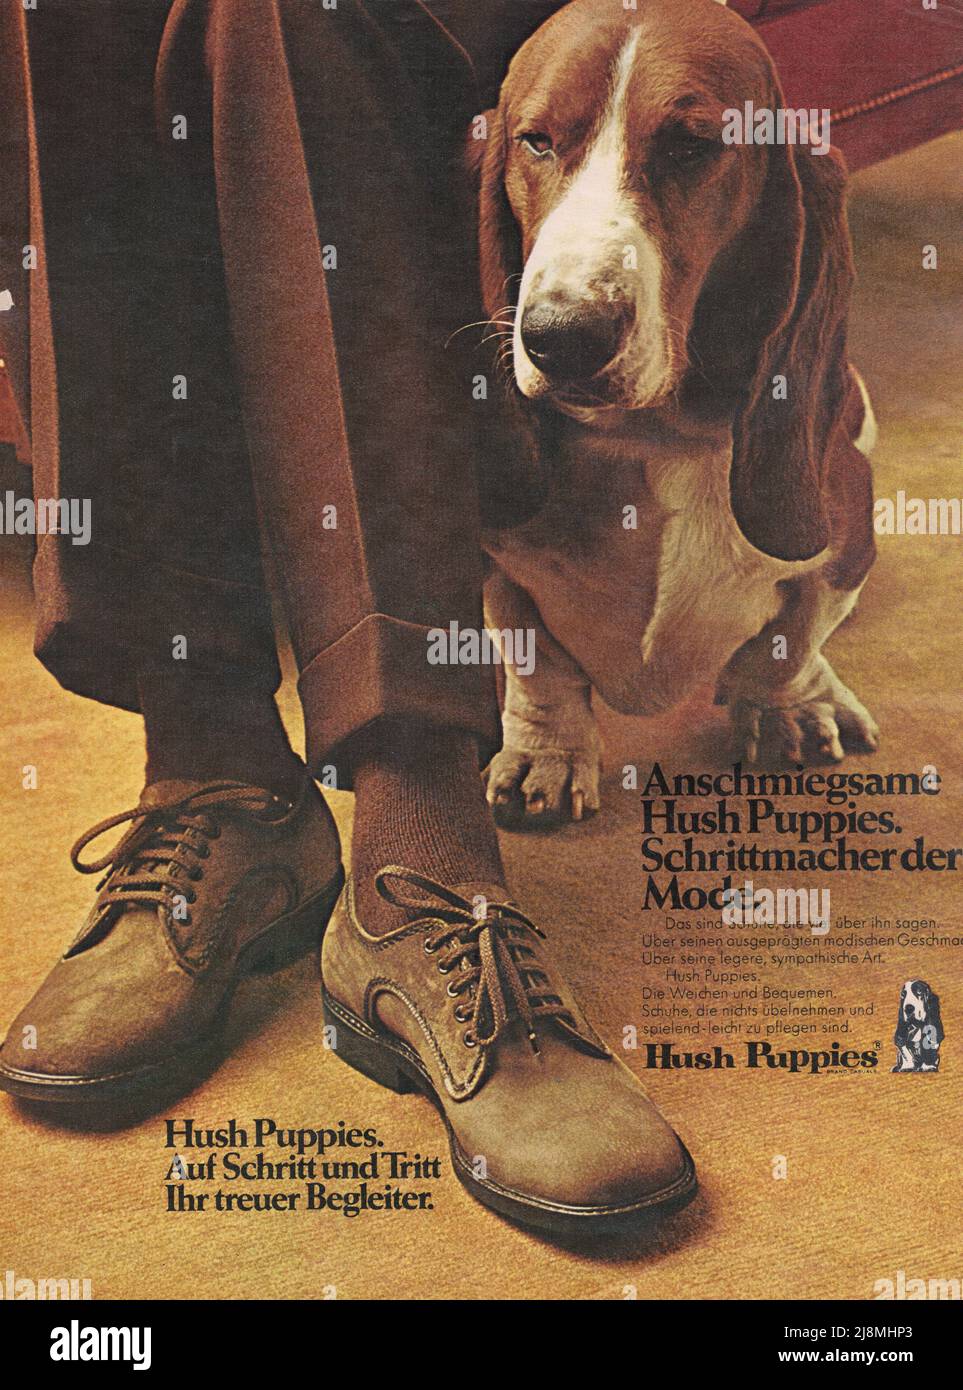 Hush Puppies vintage uomo scarpe pubblicità carta tedesca pubblicità 1980s Foto Stock